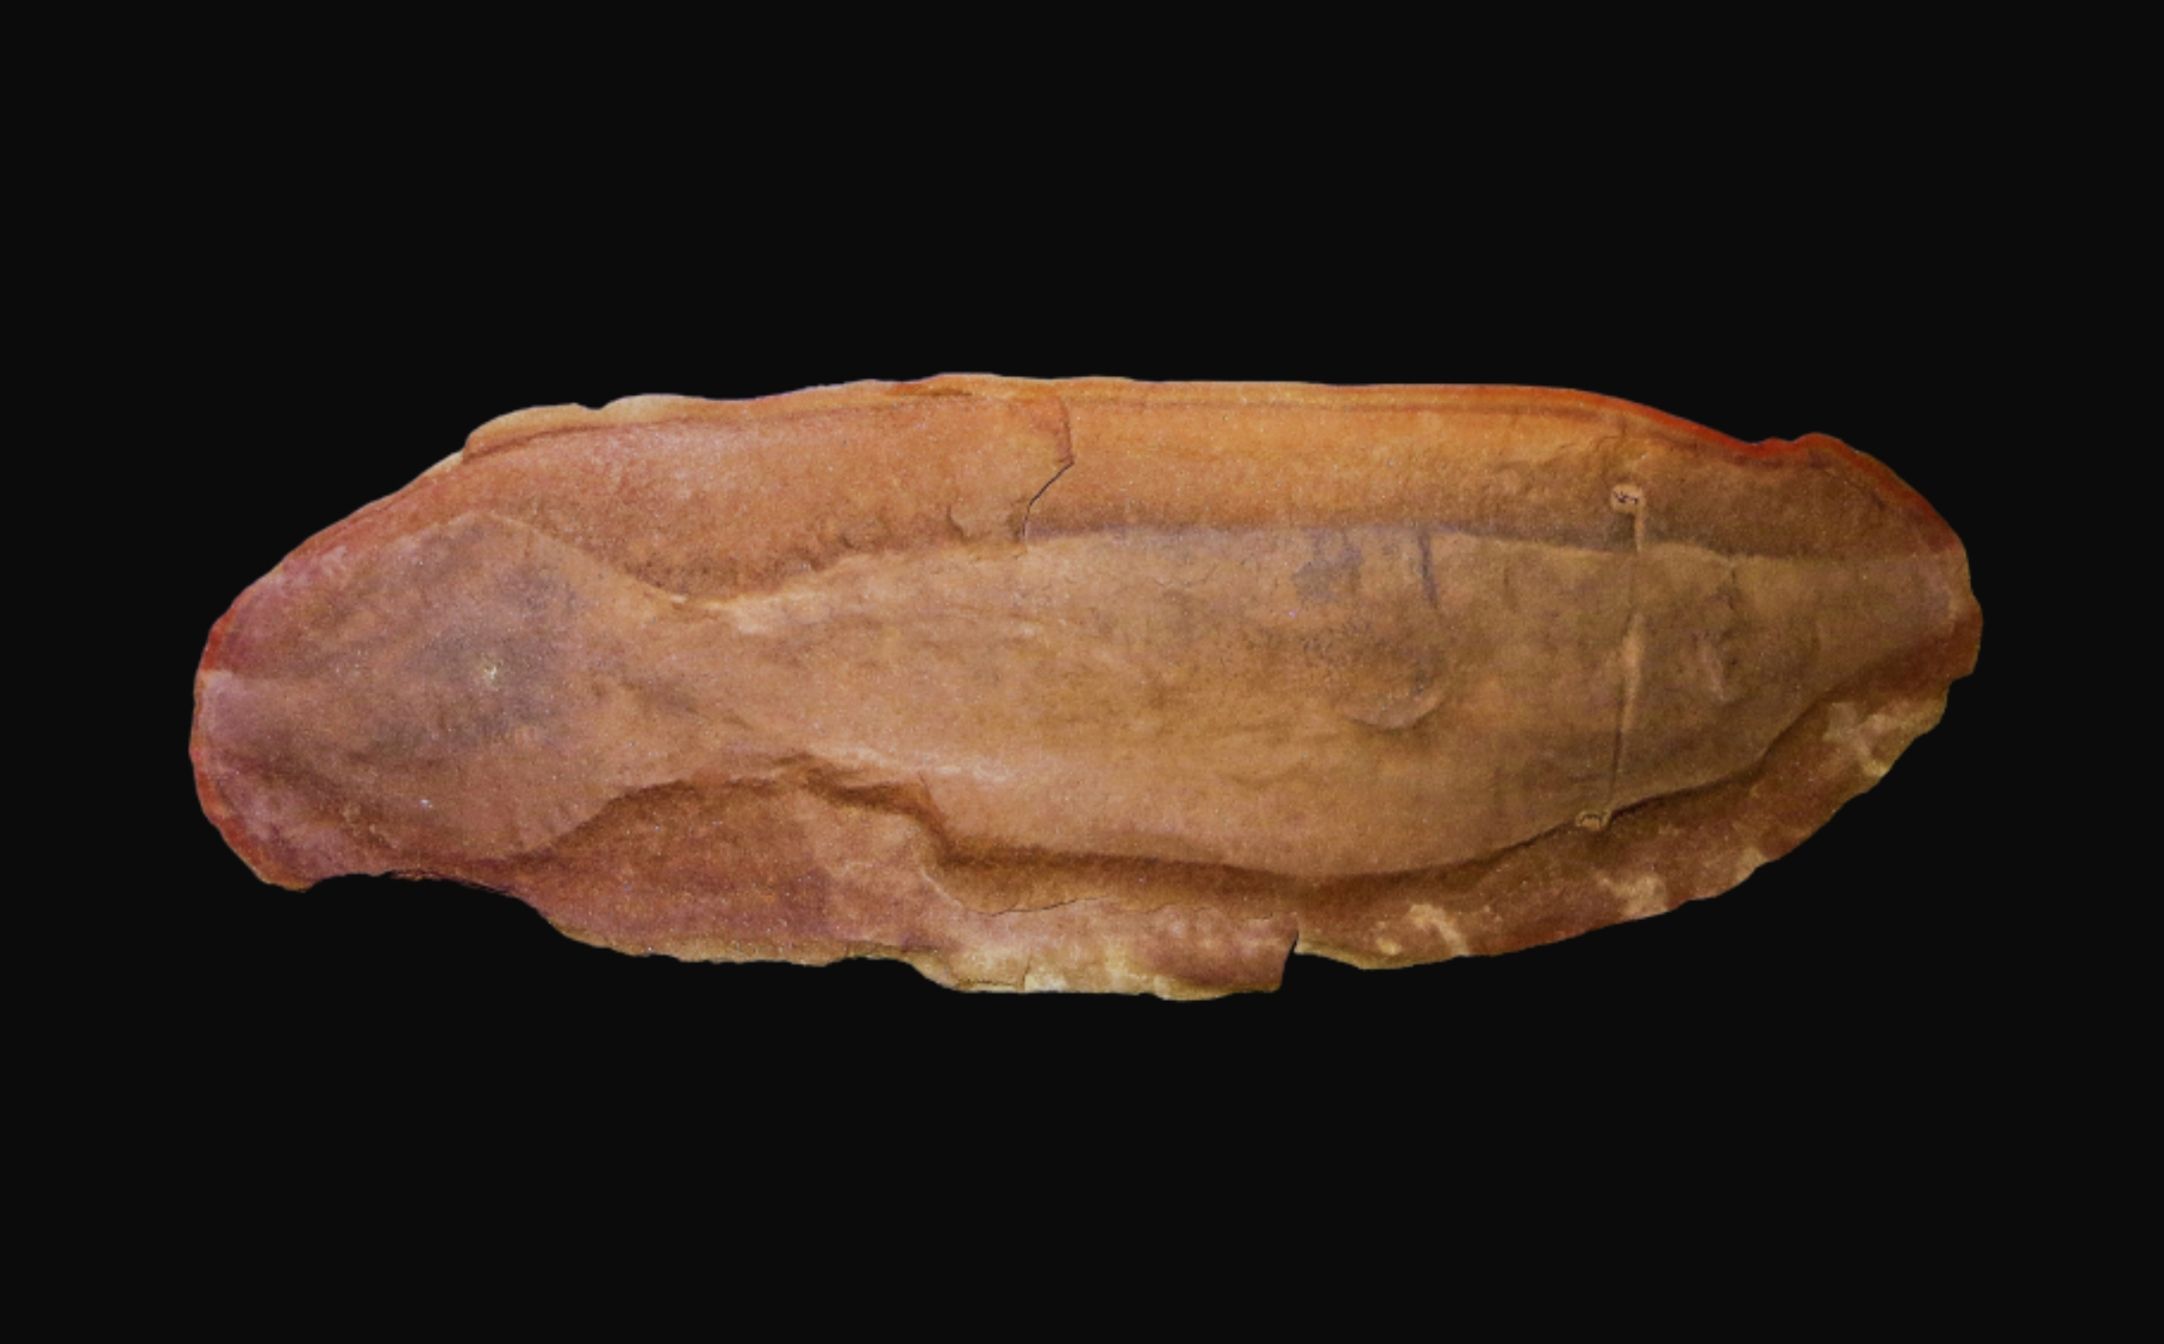 டல்லி மான்ஸ்டர் - நீல 1 இல் இருந்து ஒரு மர்மமான வரலாற்றுக்கு முந்தைய உயிரினம்